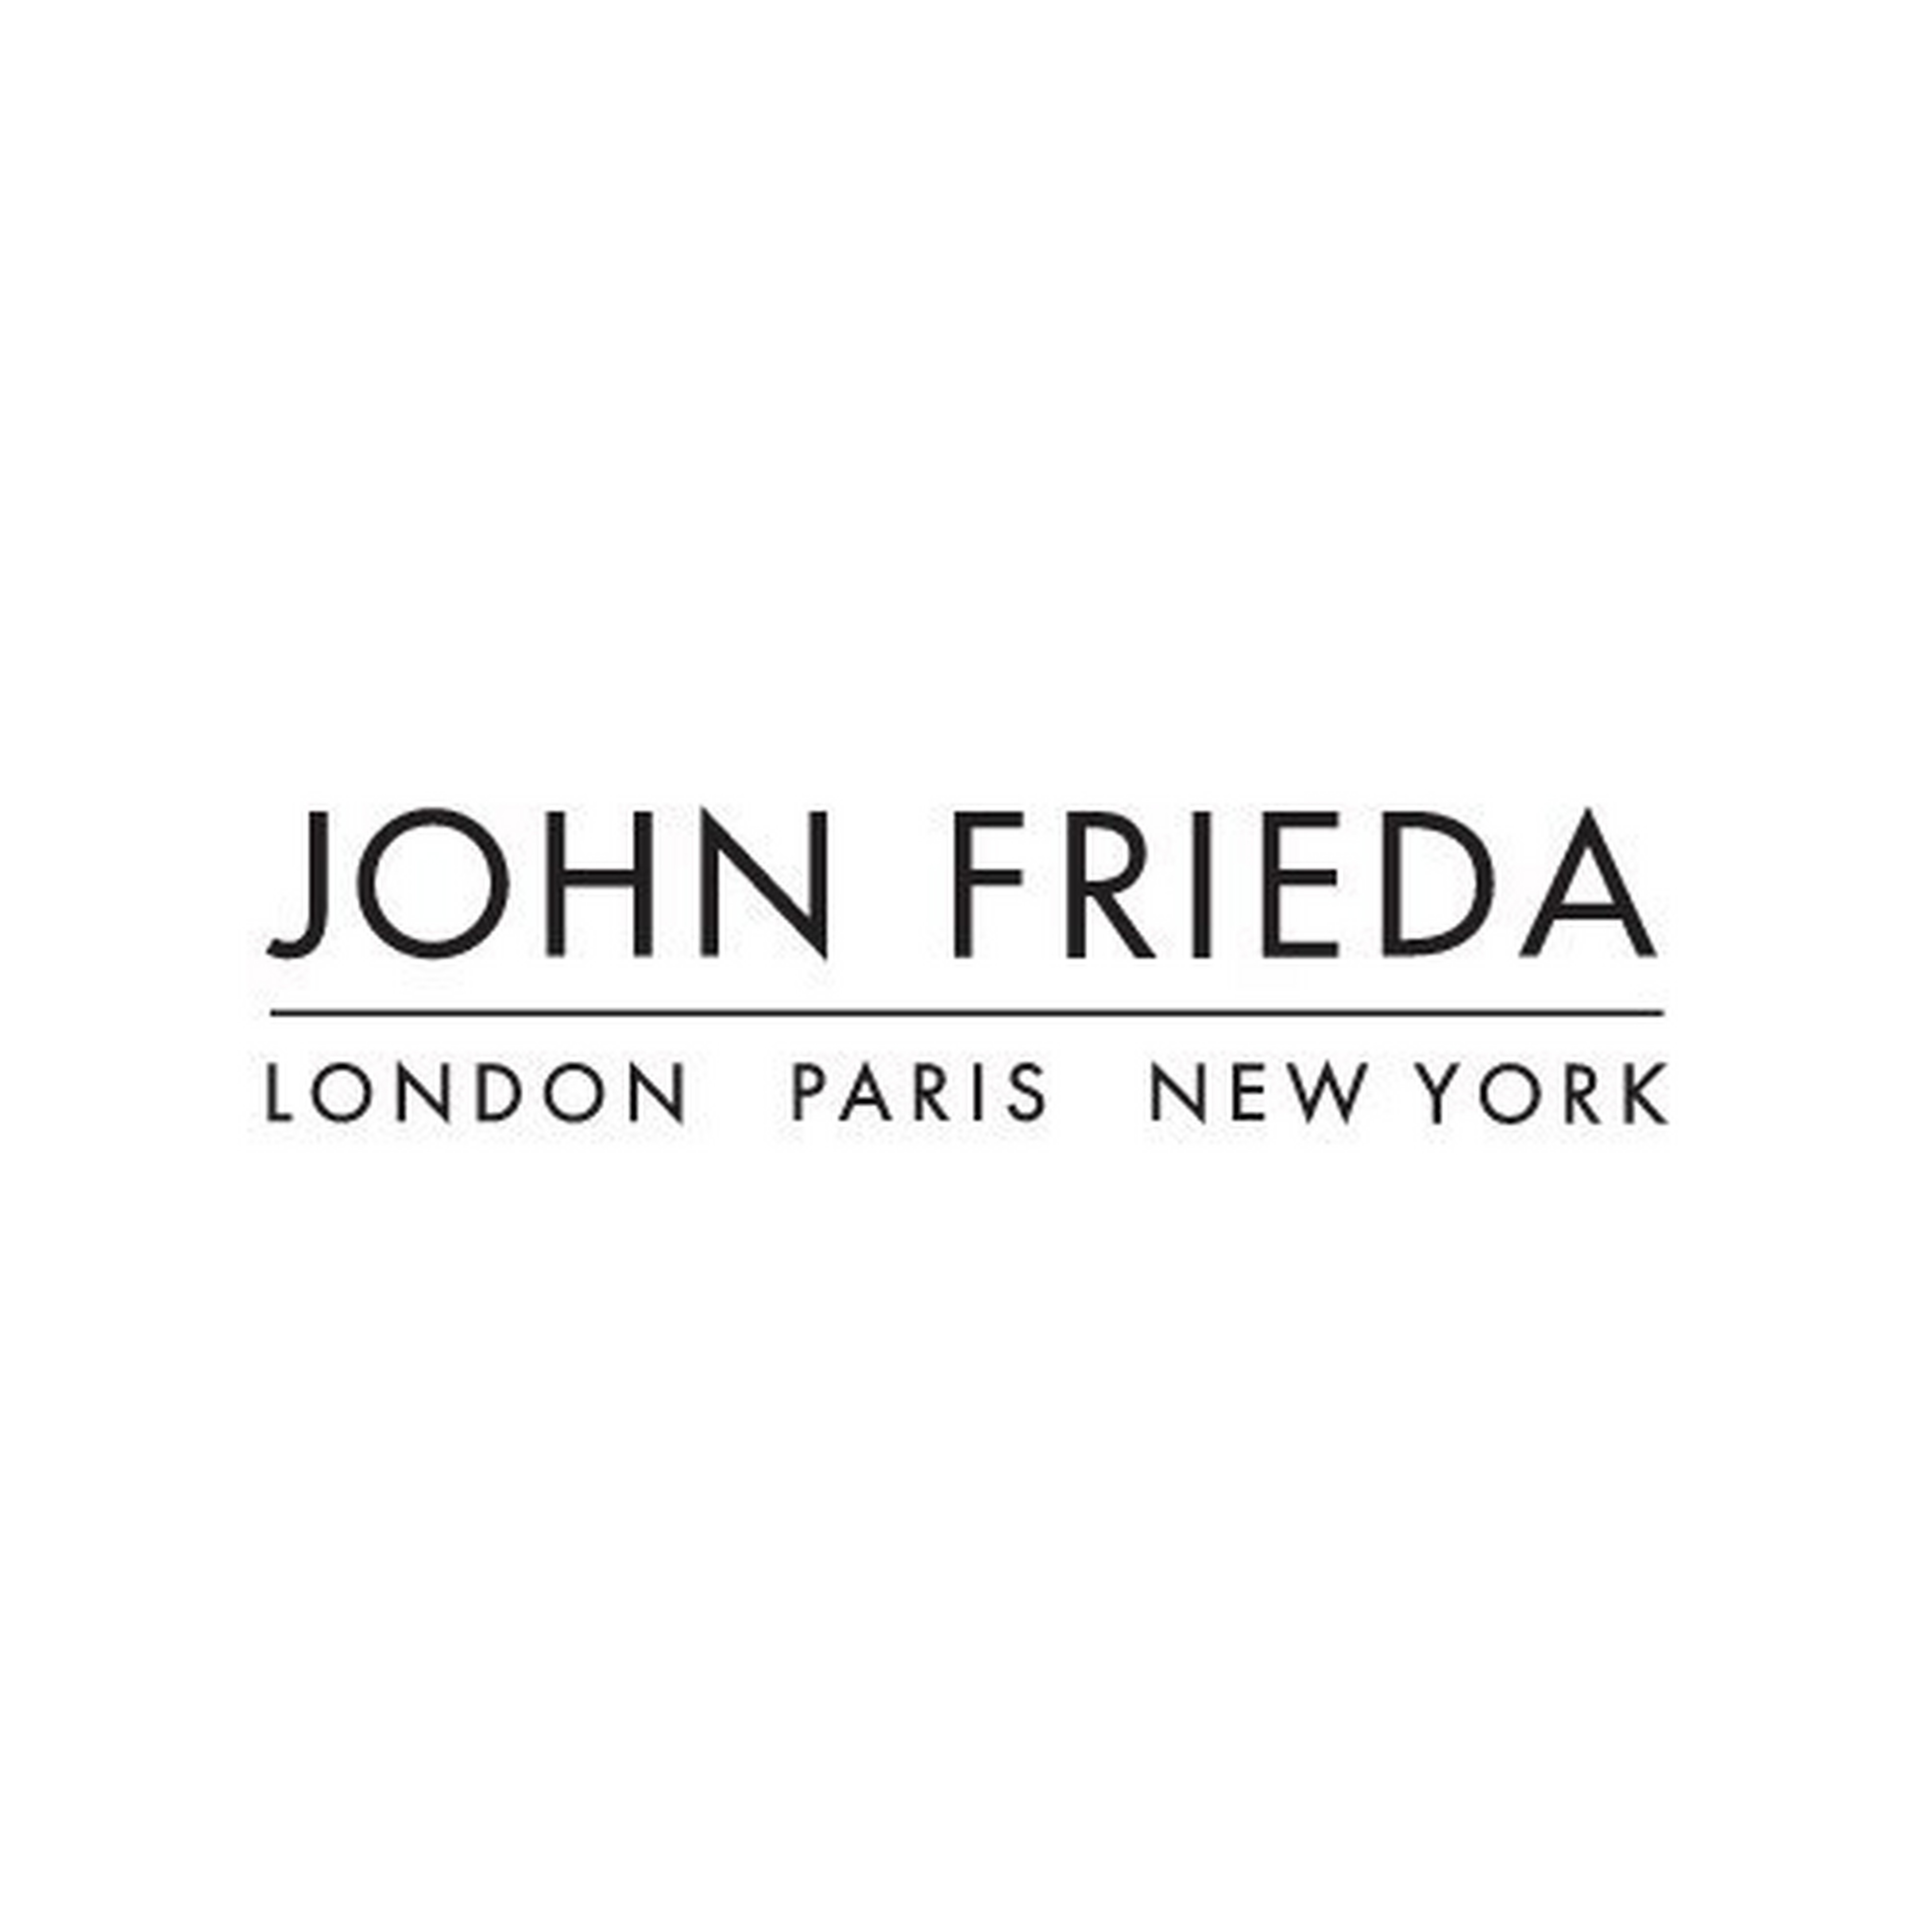 John Frieda logotype